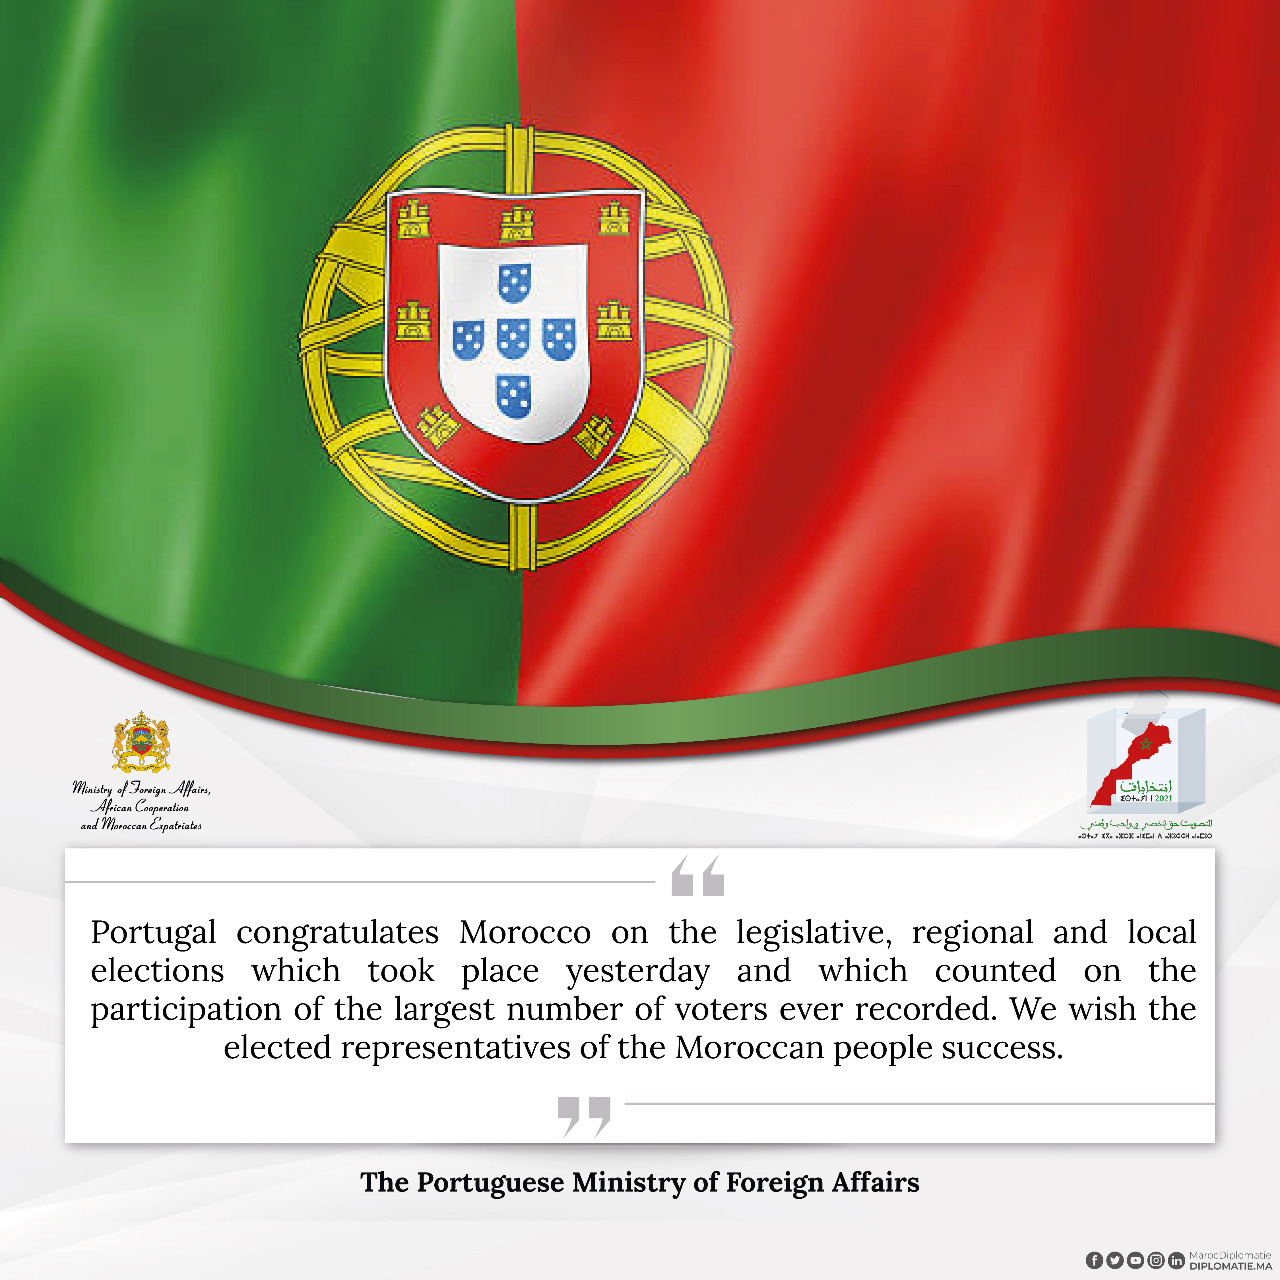 Portugal congratulates Morocco on legislative, regional and local elections in 2021